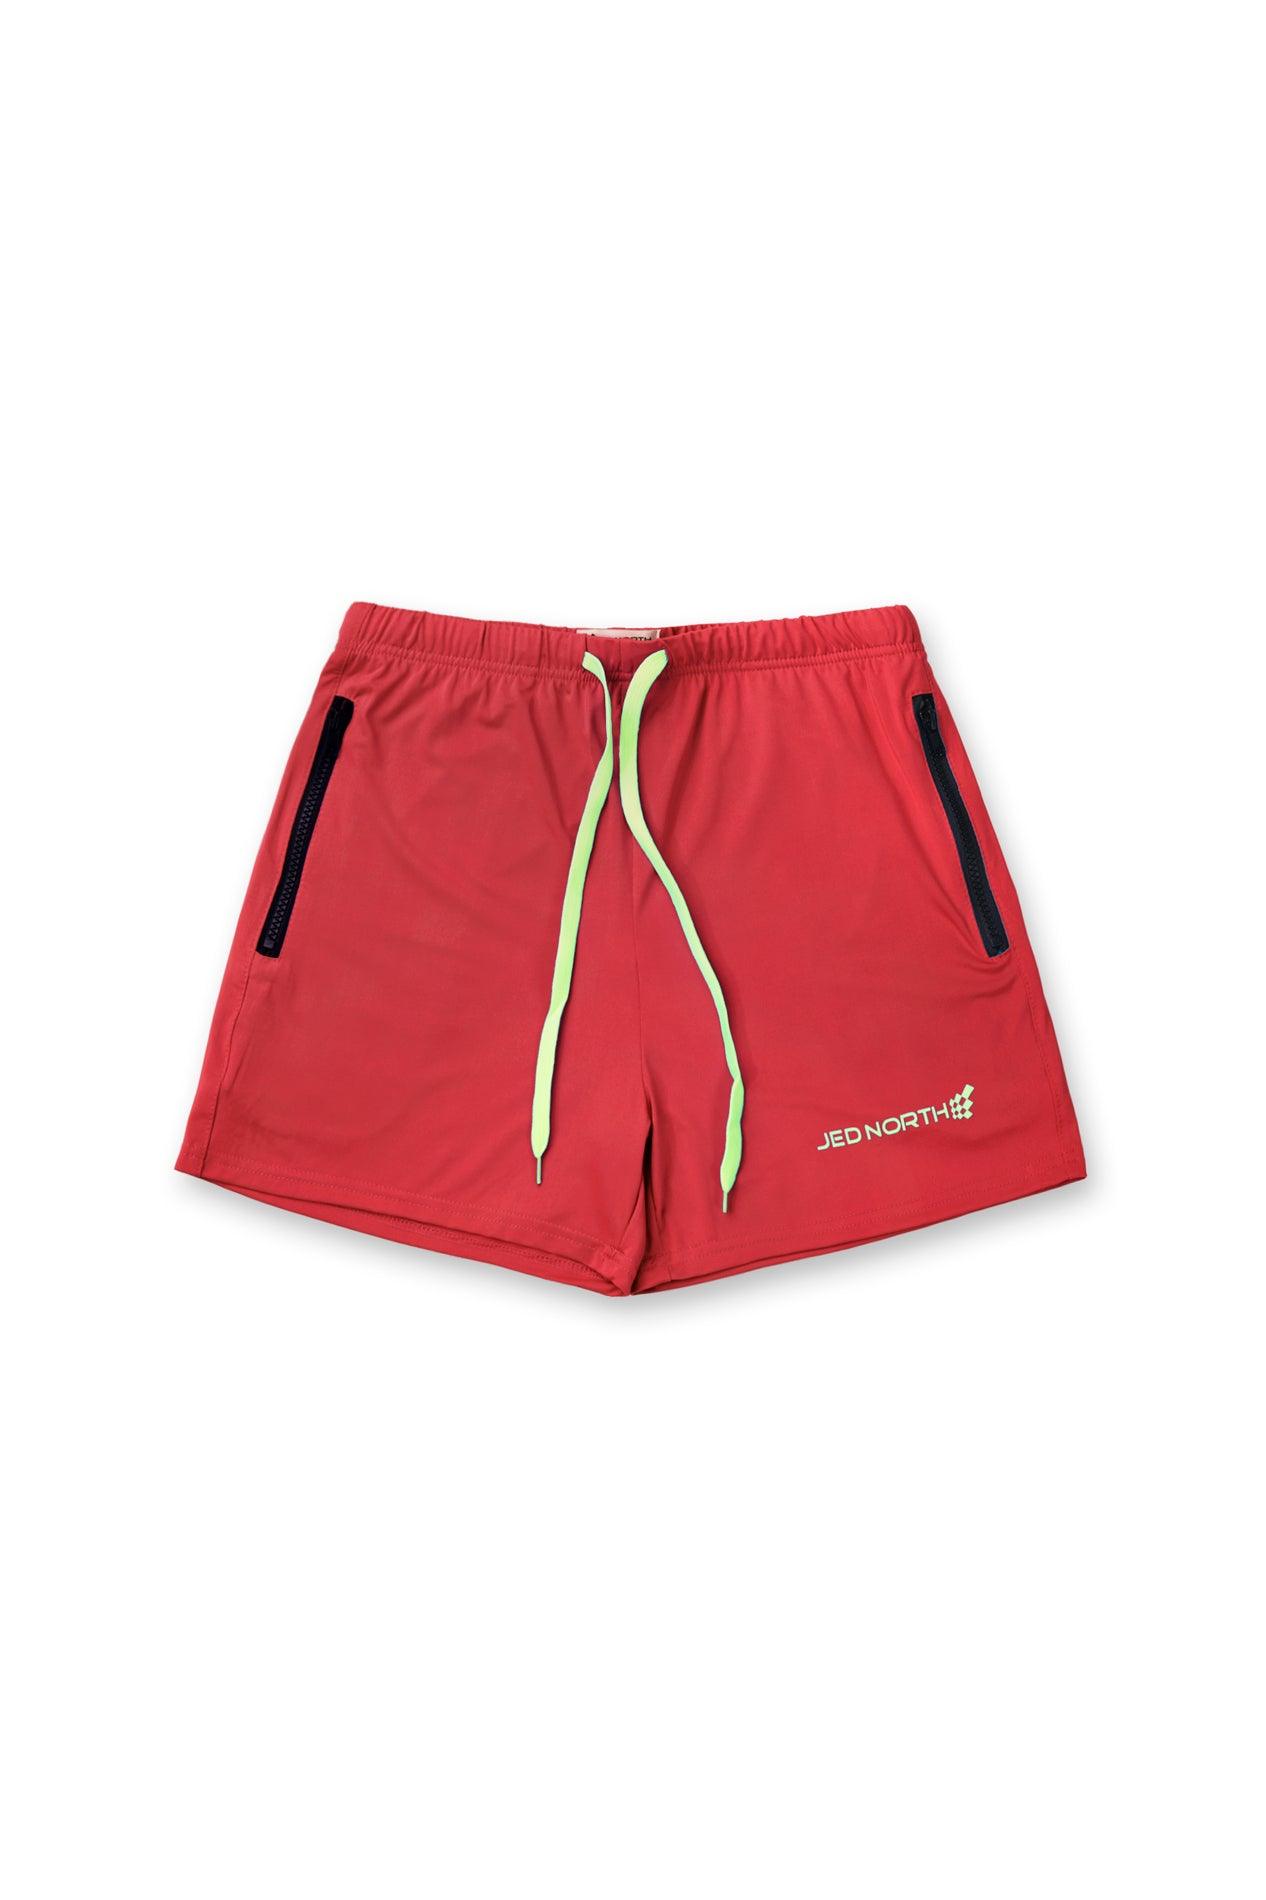 Agile Bodybuilding 4'' Shorts w Zipper Pockets - Crimson Red - Jed North